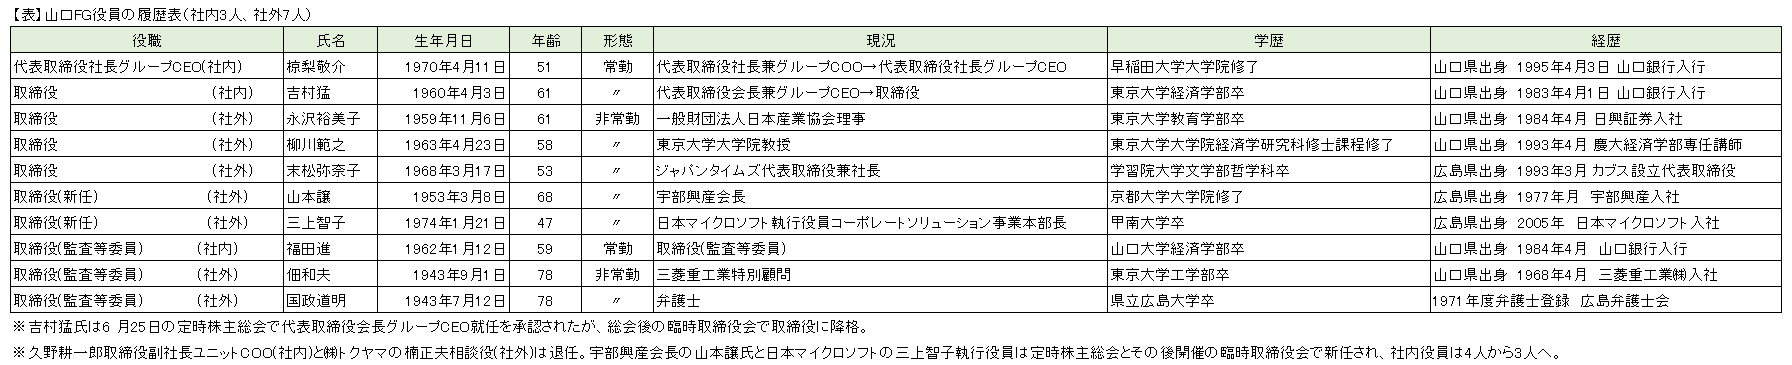 【表】山口FG役員の履歴表（社内3人、社外7人）